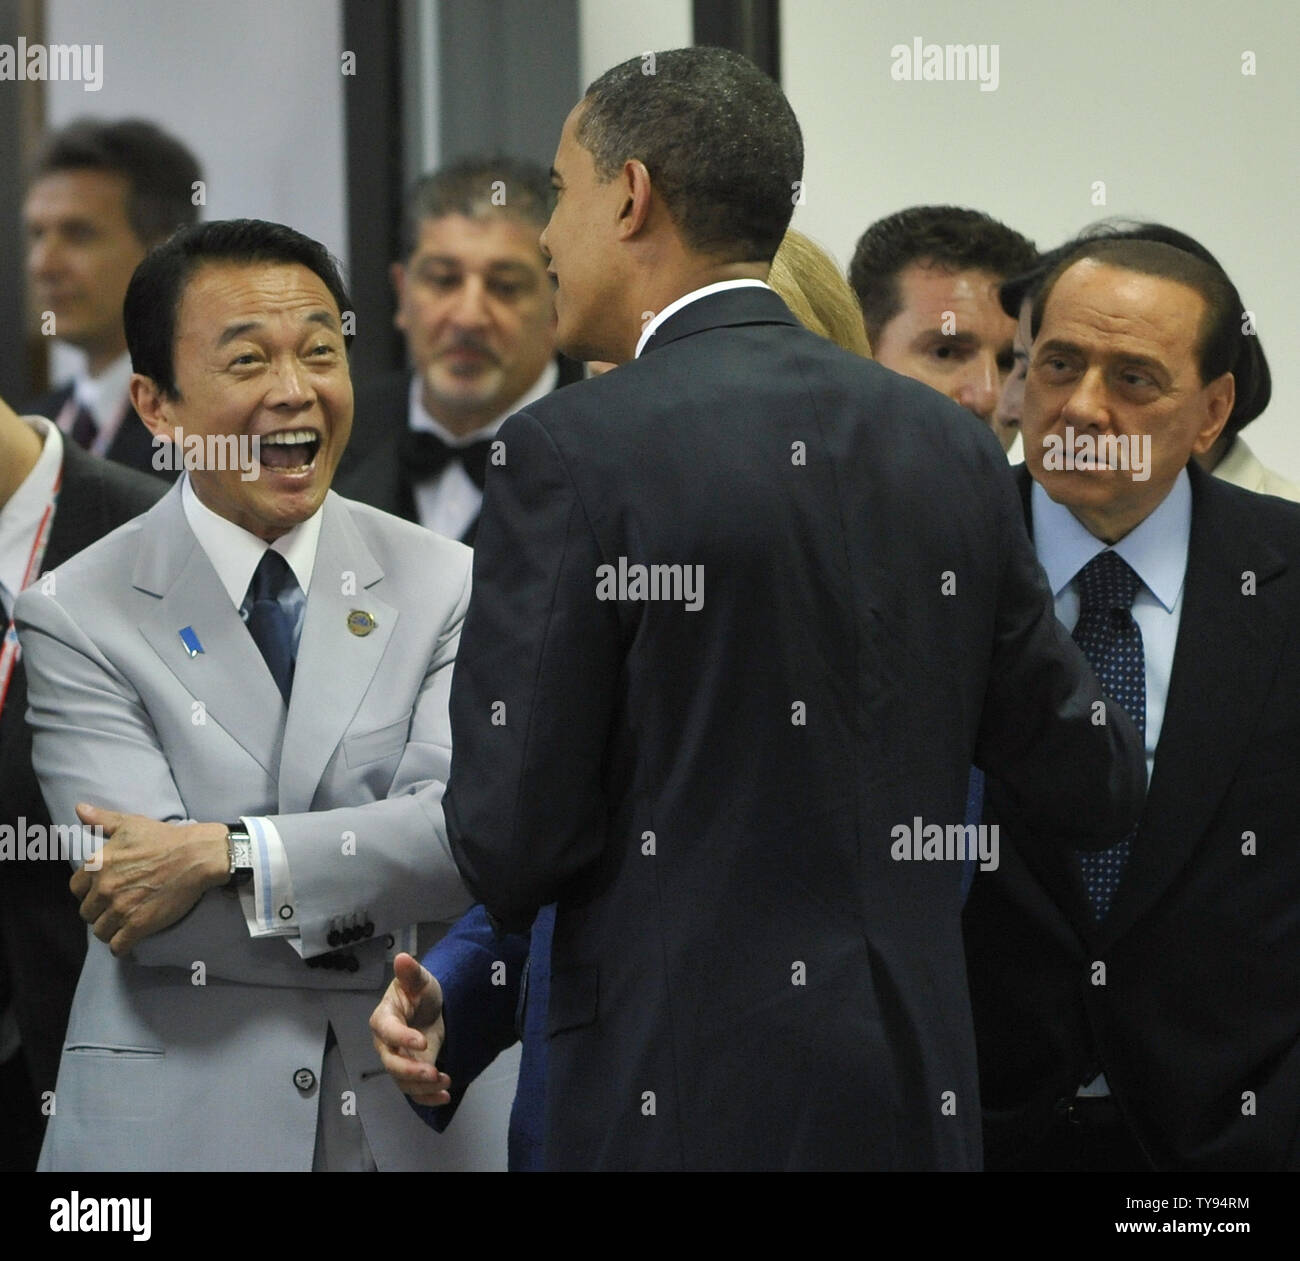 Der japanische Ministerpräsident Taro Aso (L) reagiert, als der italienische Ministerpräsident Silvio Berlusconi (R) US-Präsident Barack Obama vor einem Runden Tisch auf dem G8-Gipfel in L'Aquila, Italien am 8. Juli 2009 abhört. (UPI Foto/Alex Volgin) Stockfoto